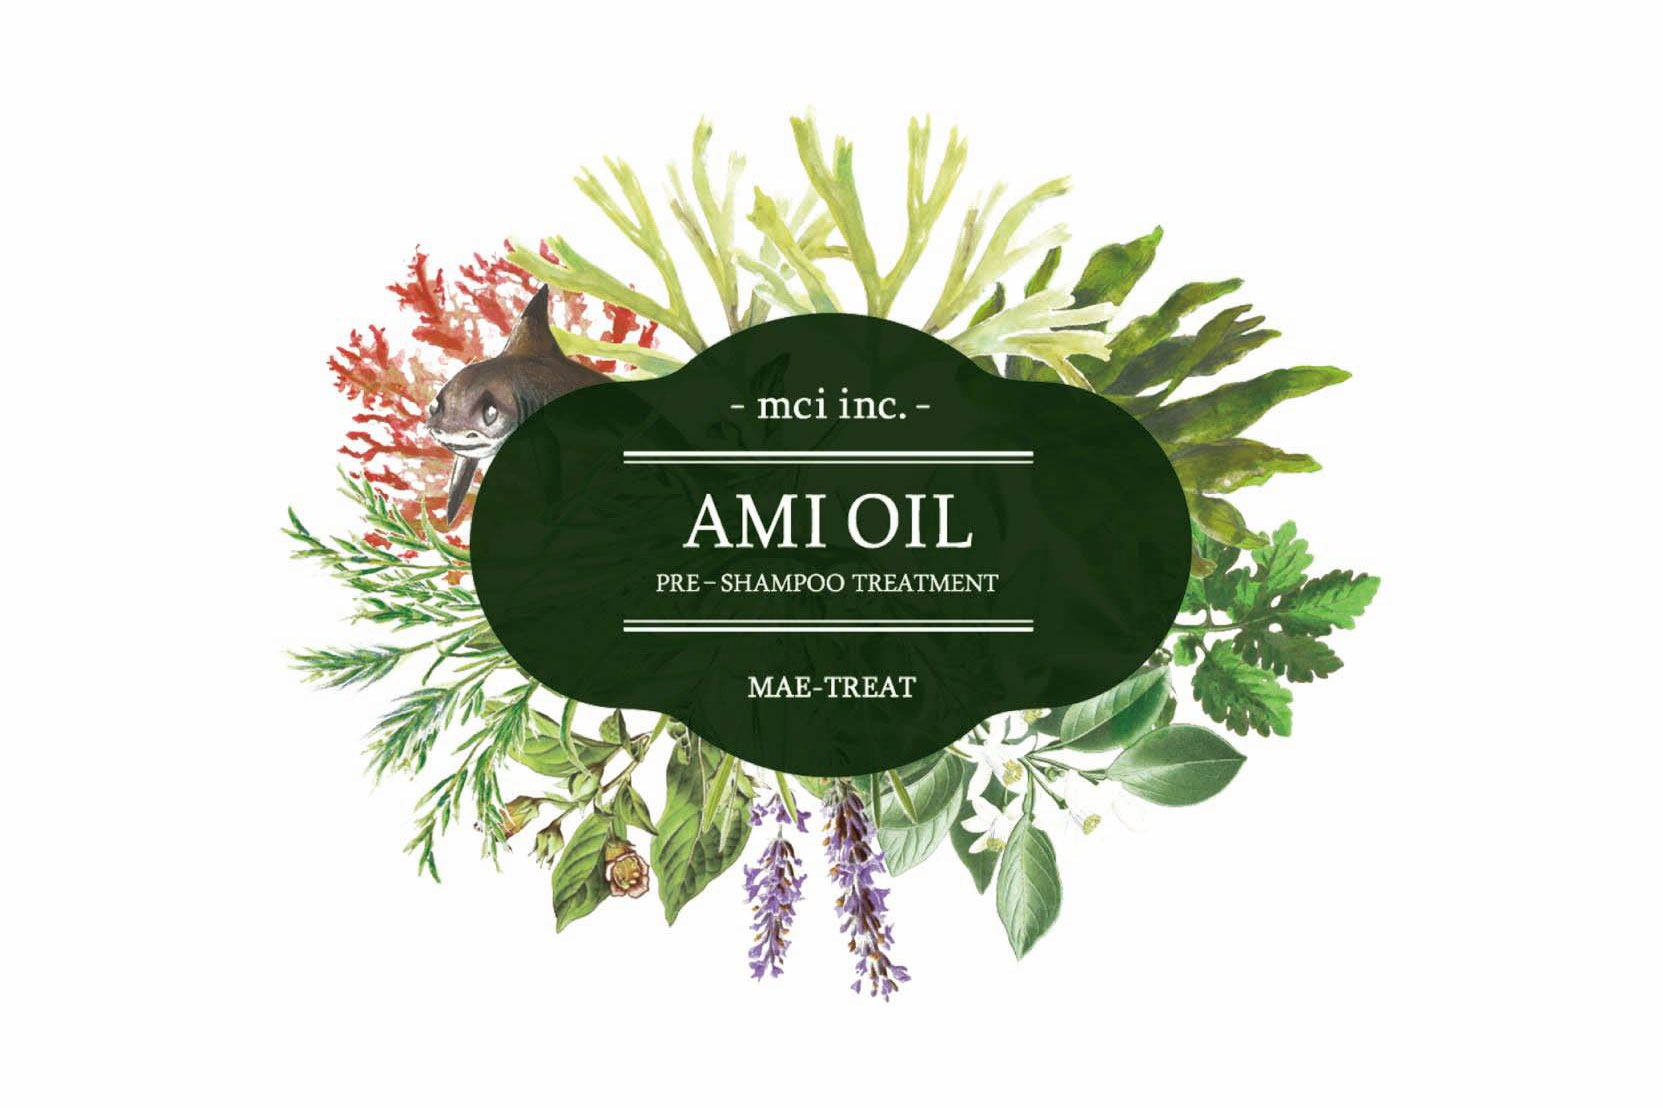 Ami oil 1